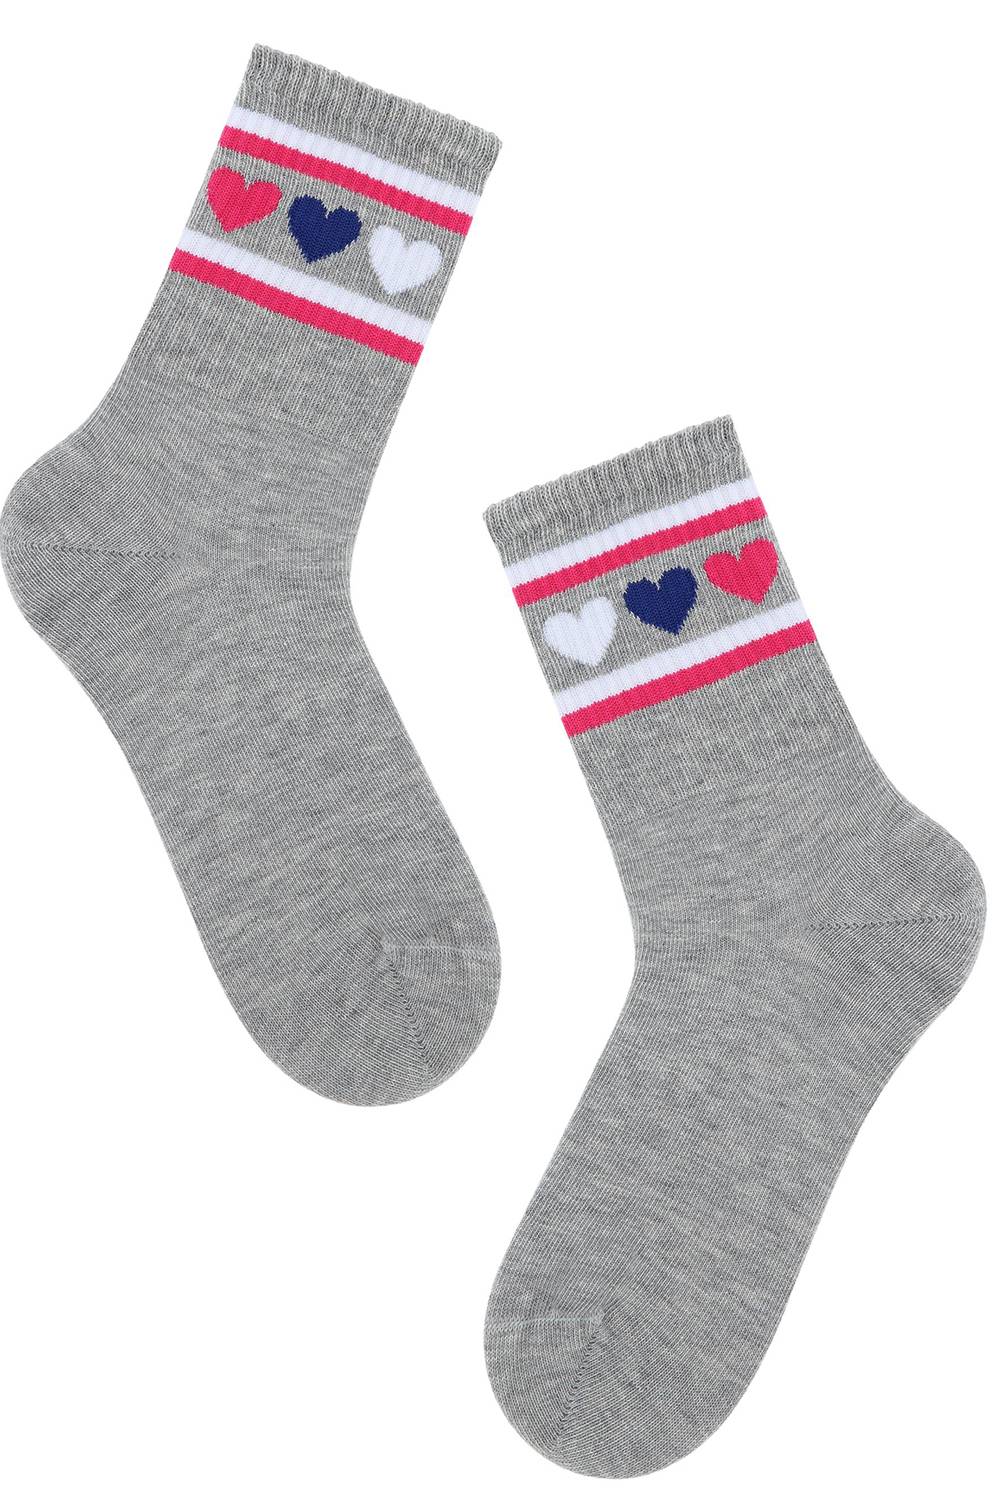 CALZEDONIA - Calcetines cortos de algodón para niños